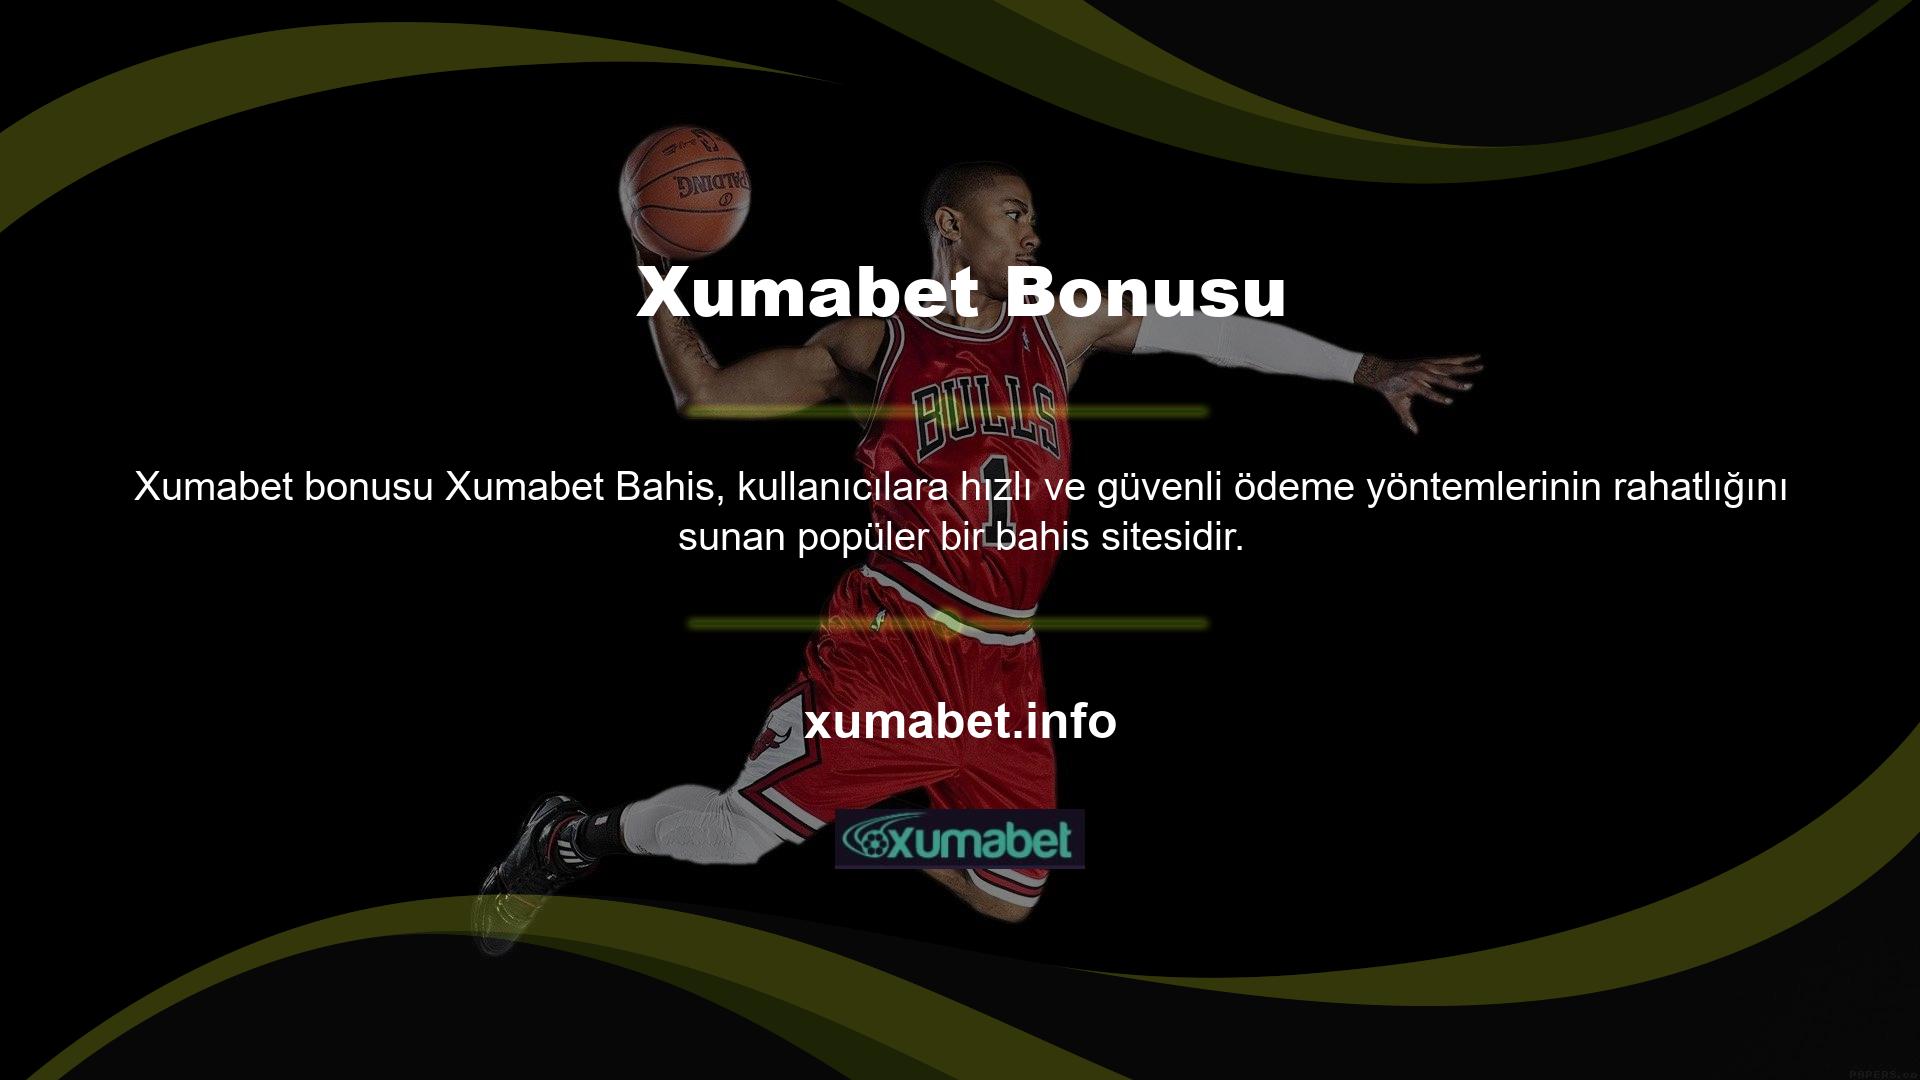 Xumabet ortak bir özelliğidir ancak popülerlikleri artmıştır